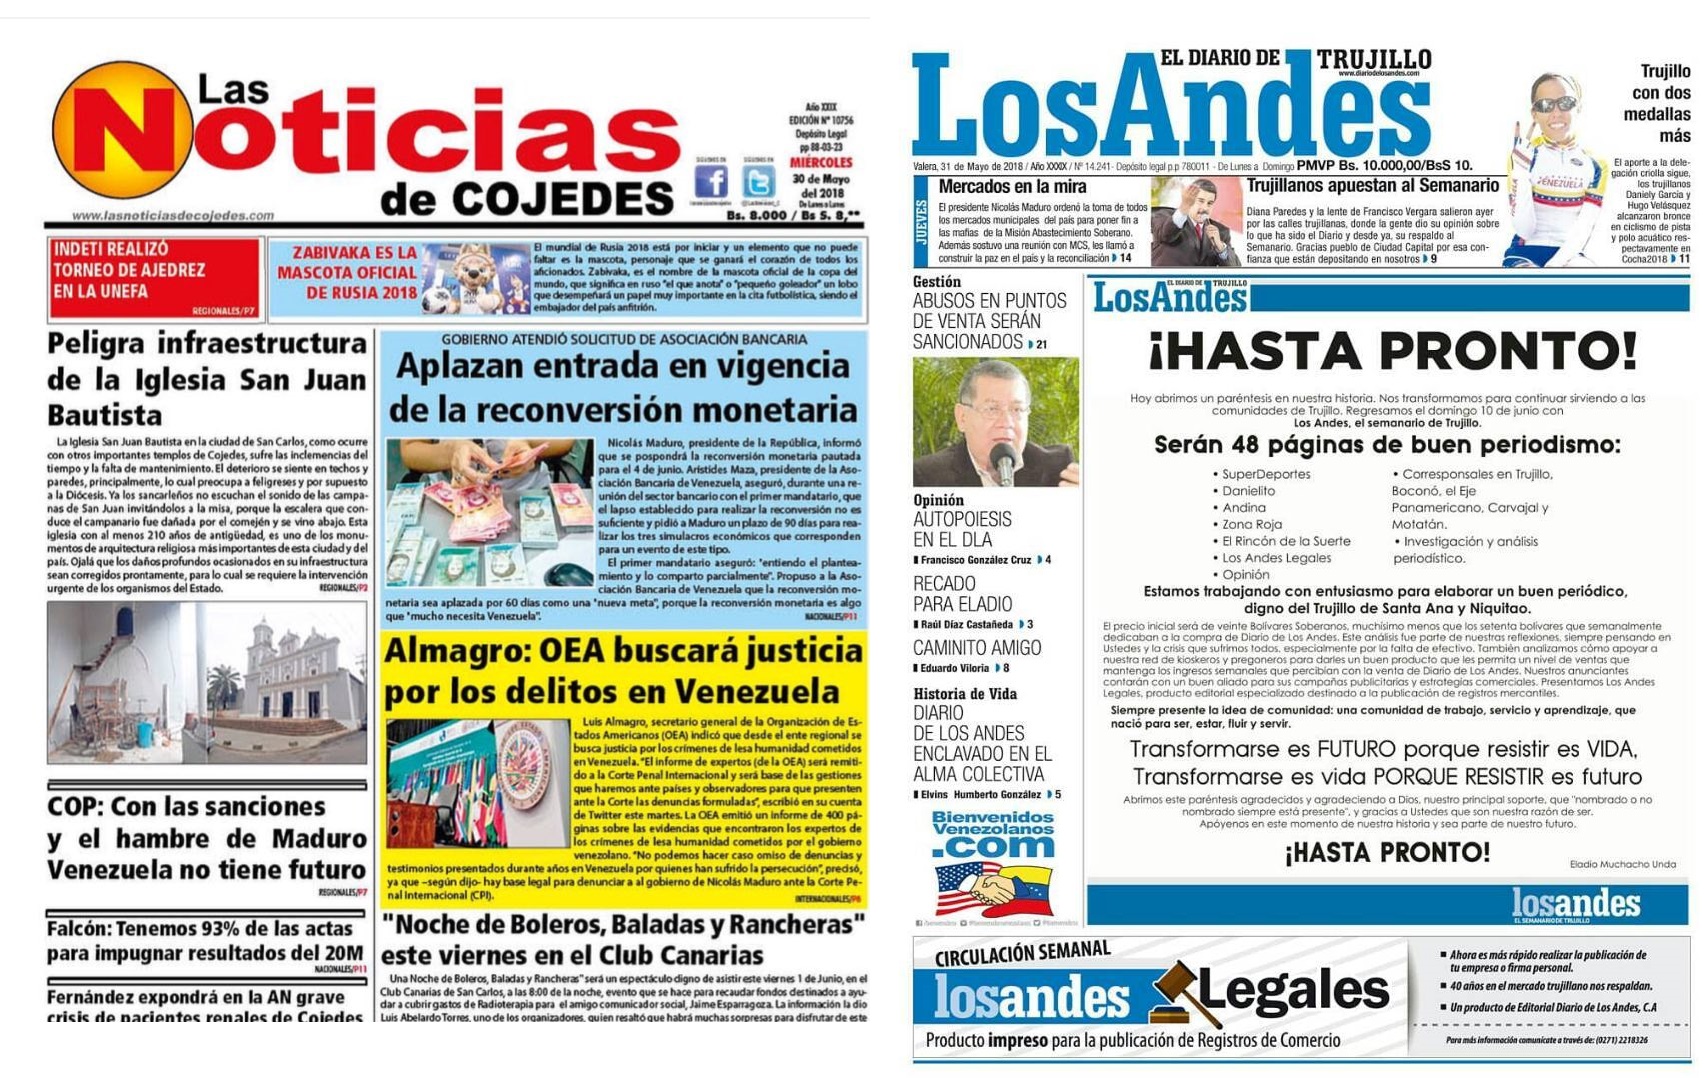 El socialismo contra la información: Dos periódicos regionales suspenden su circulación